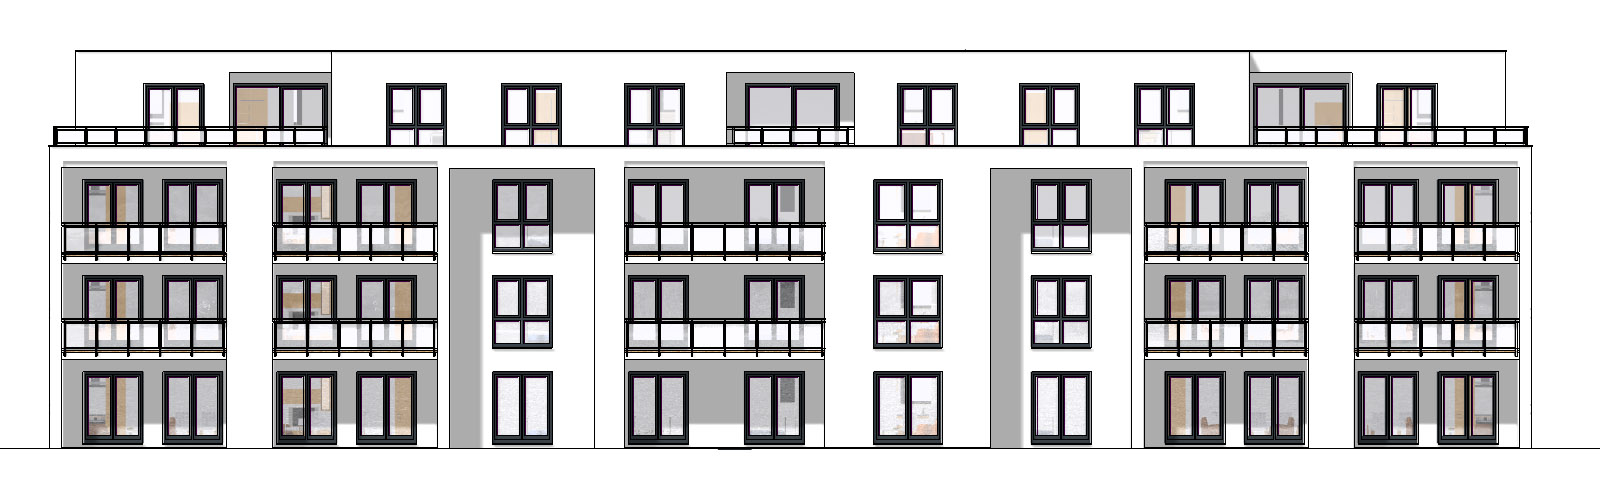 Wohnanlage mit 18 Wohnungen Ansicht 3